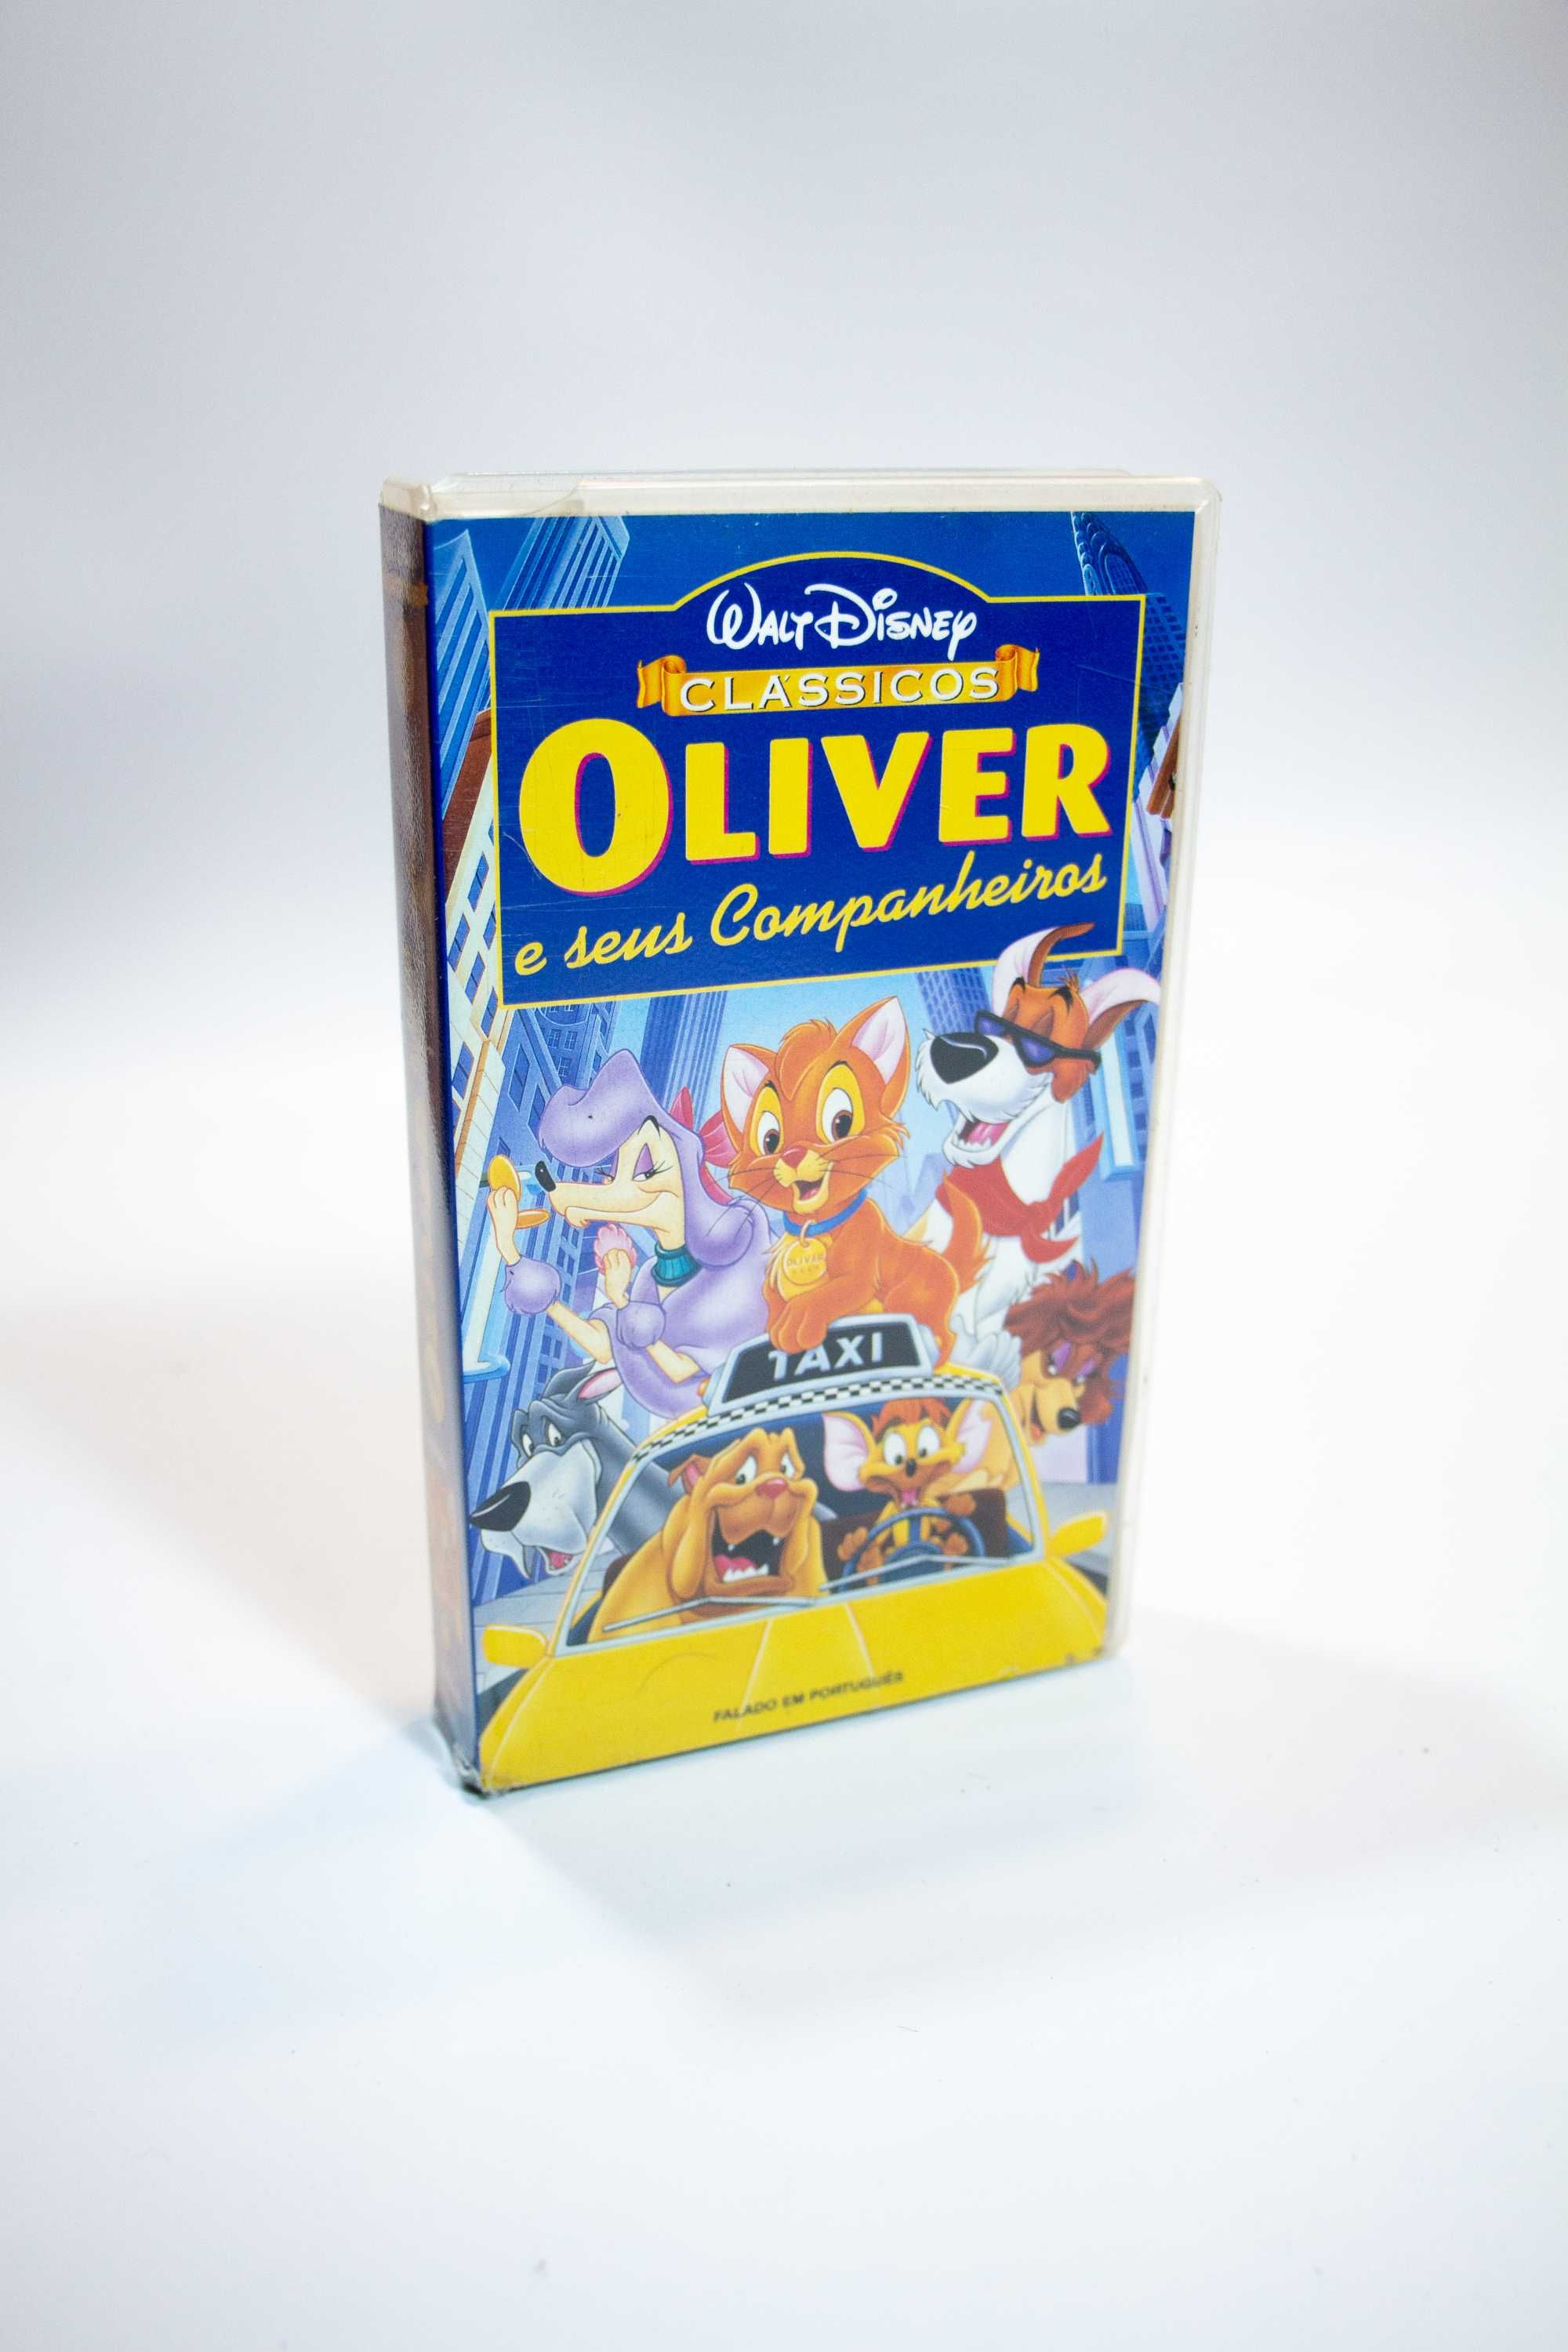 OLIVER e os seus companheiros em VHS